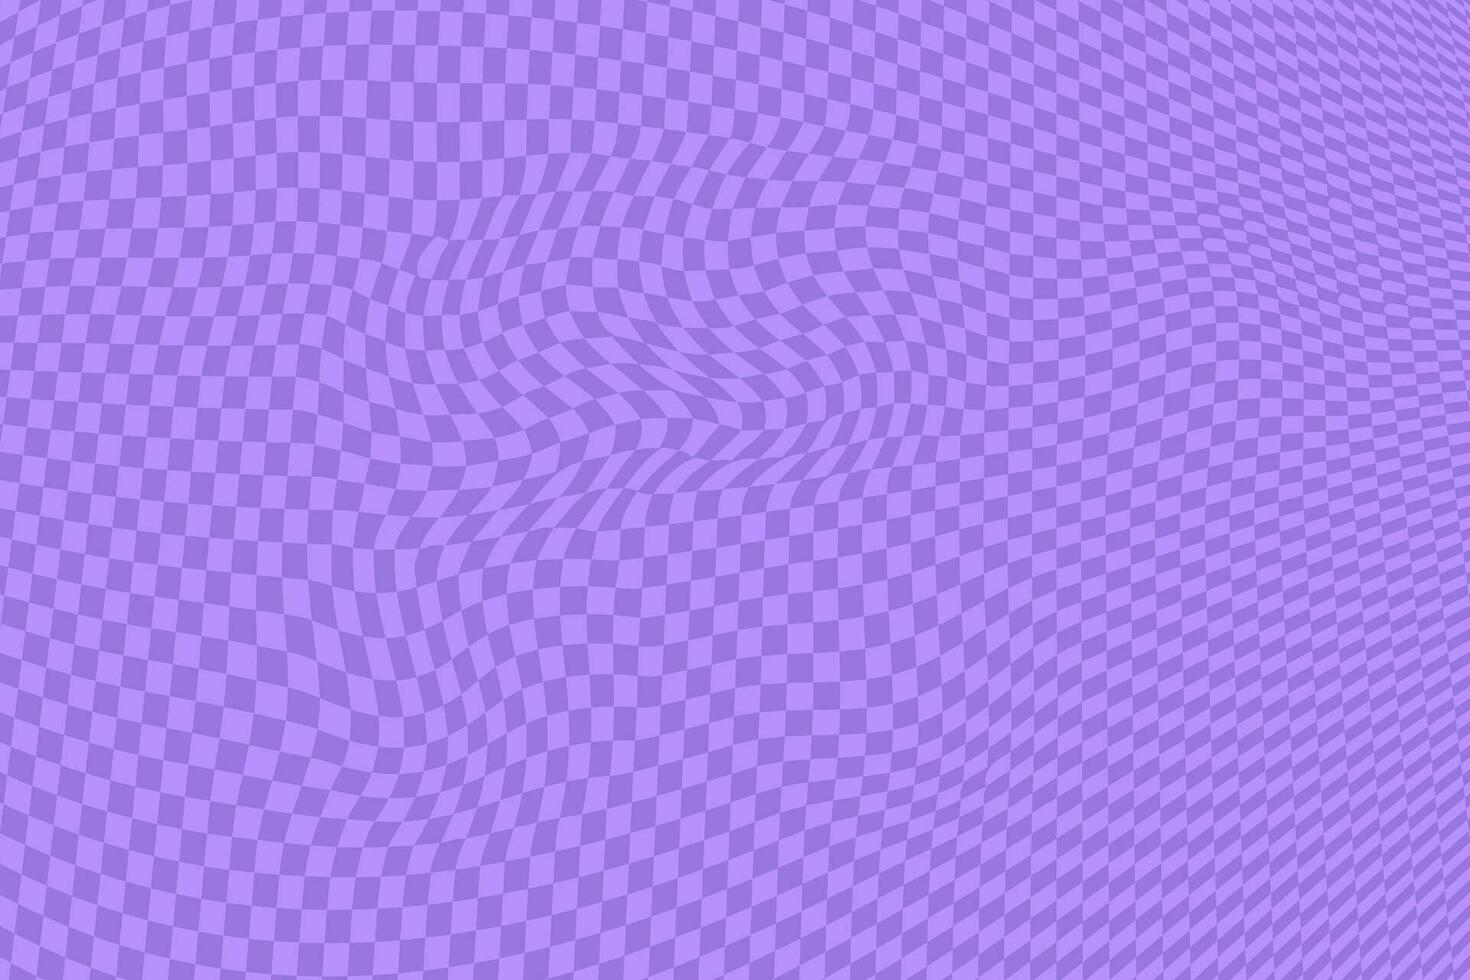 púrpura retro psicodélico tablero de damas modelo. maravilloso miedoso texturas vector